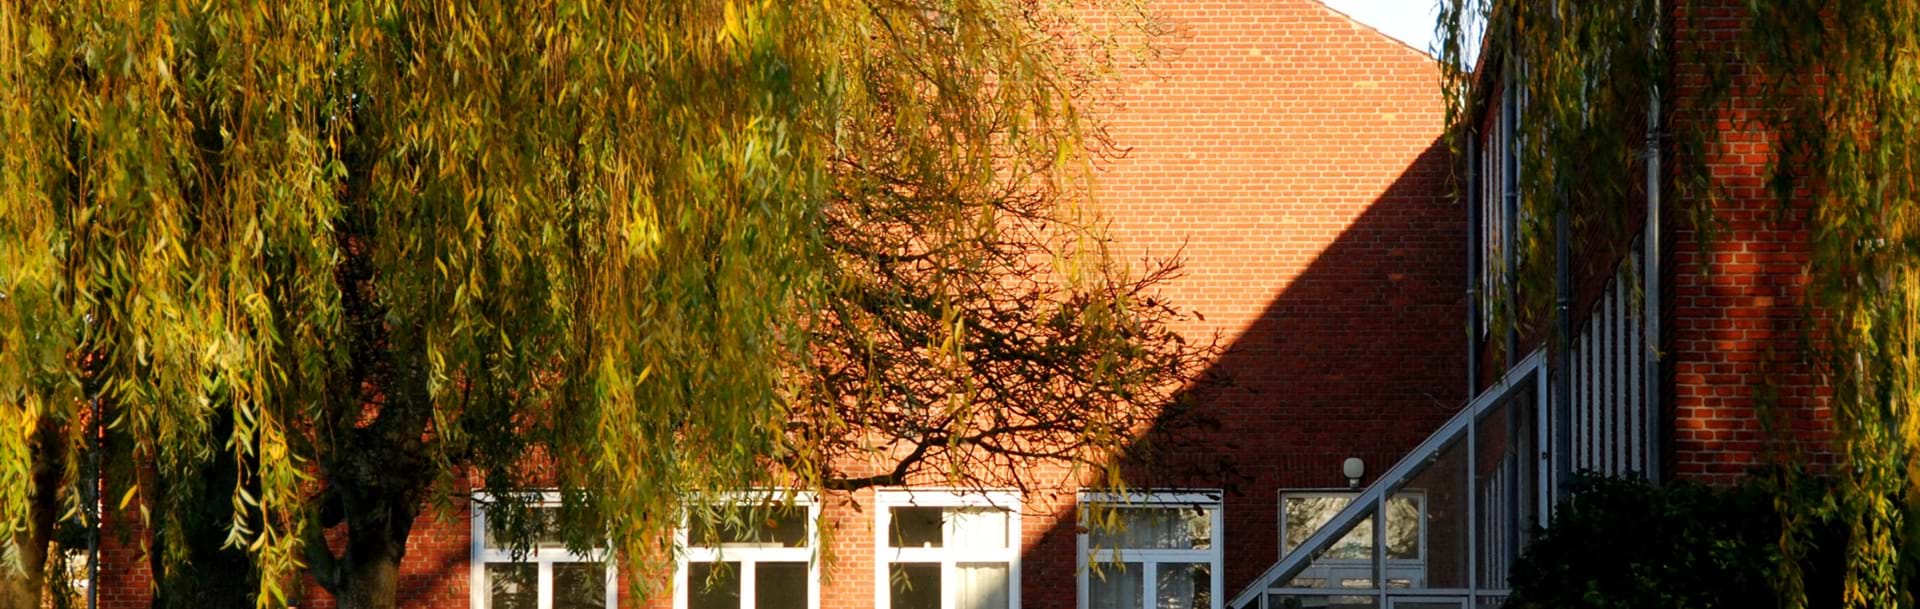 En af skolens bygninger i baggrunden med et stort træ foran